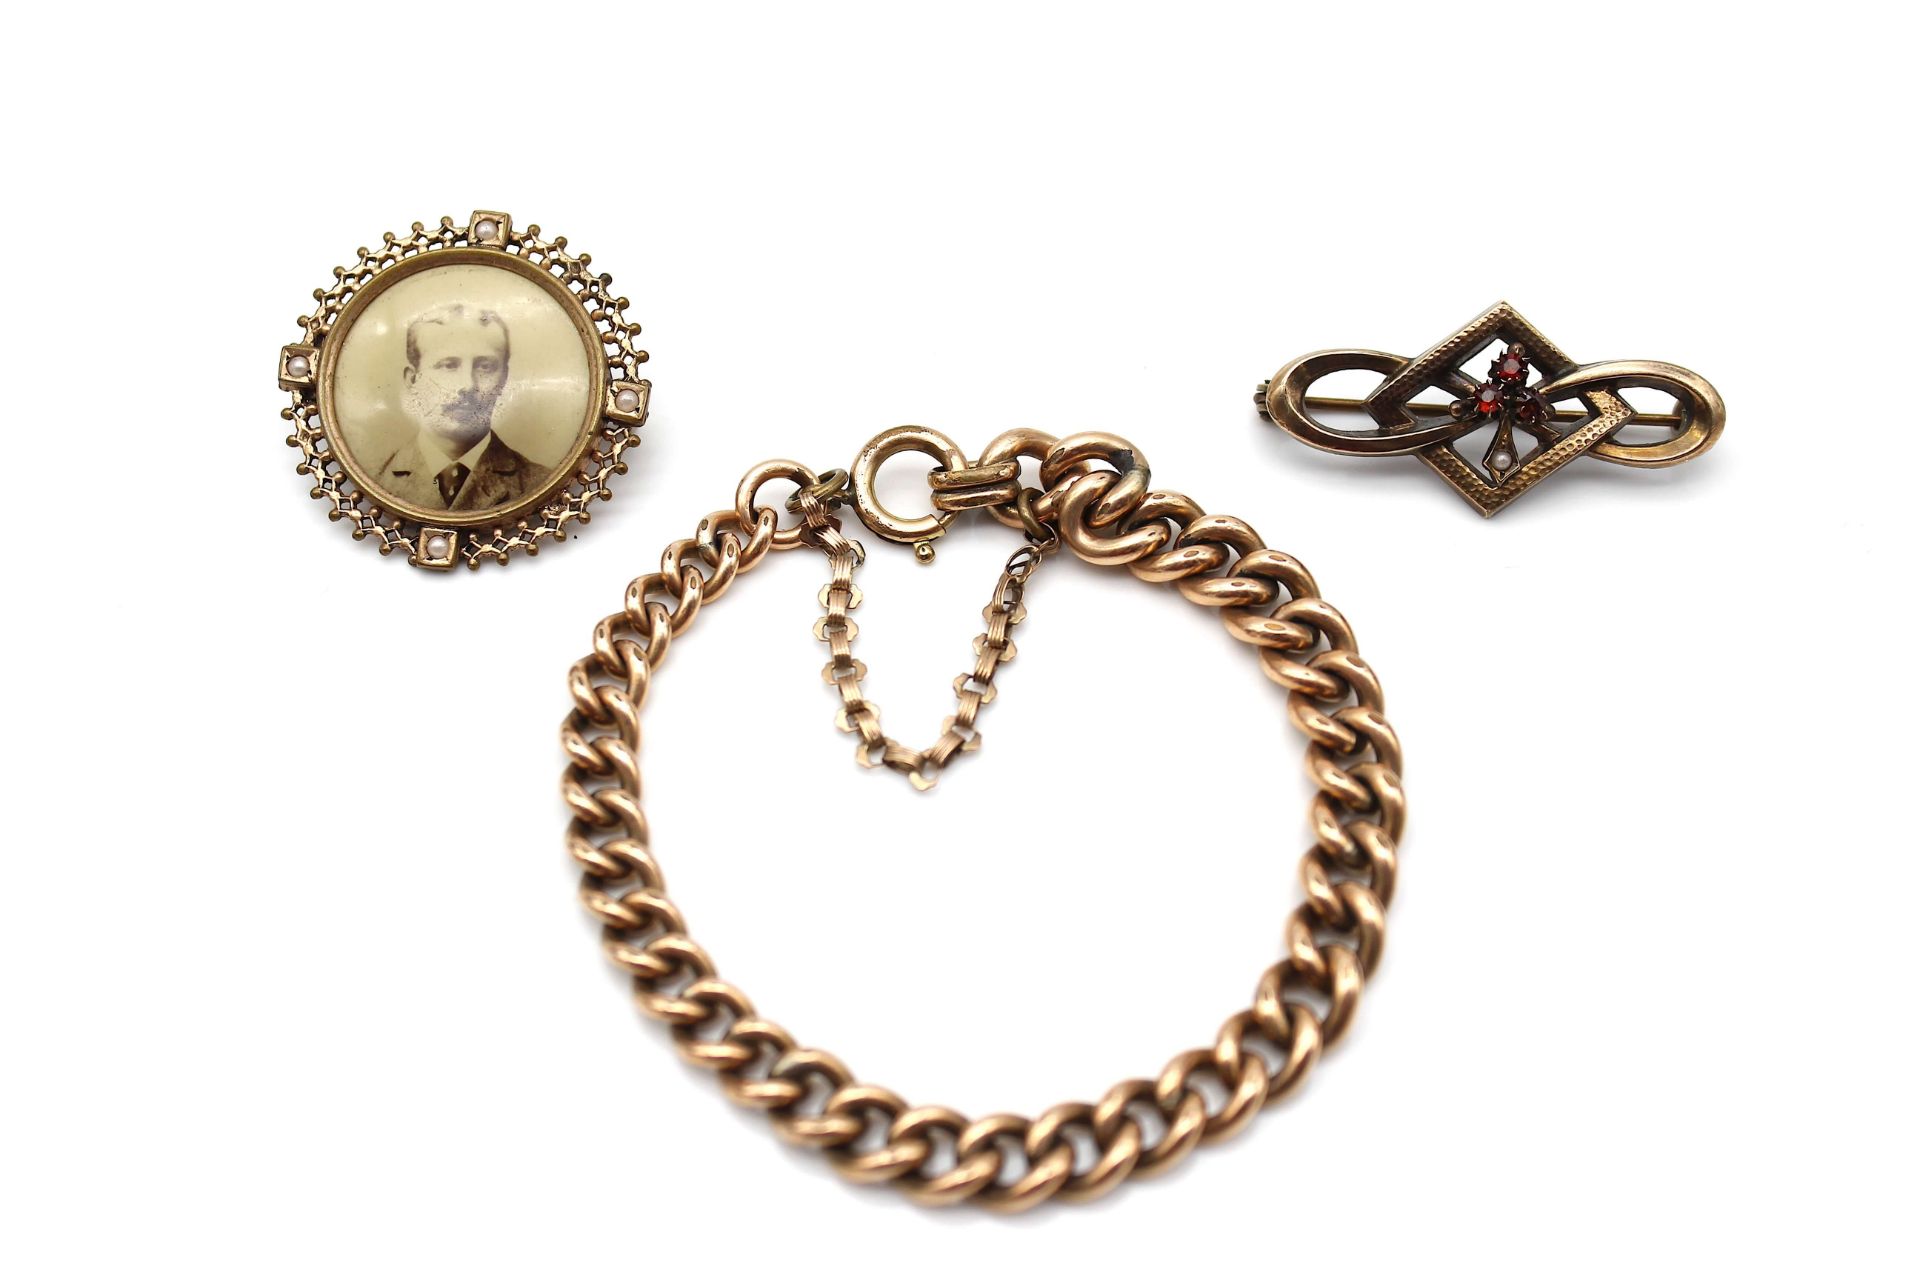 3 pieces of jewellery around 1900